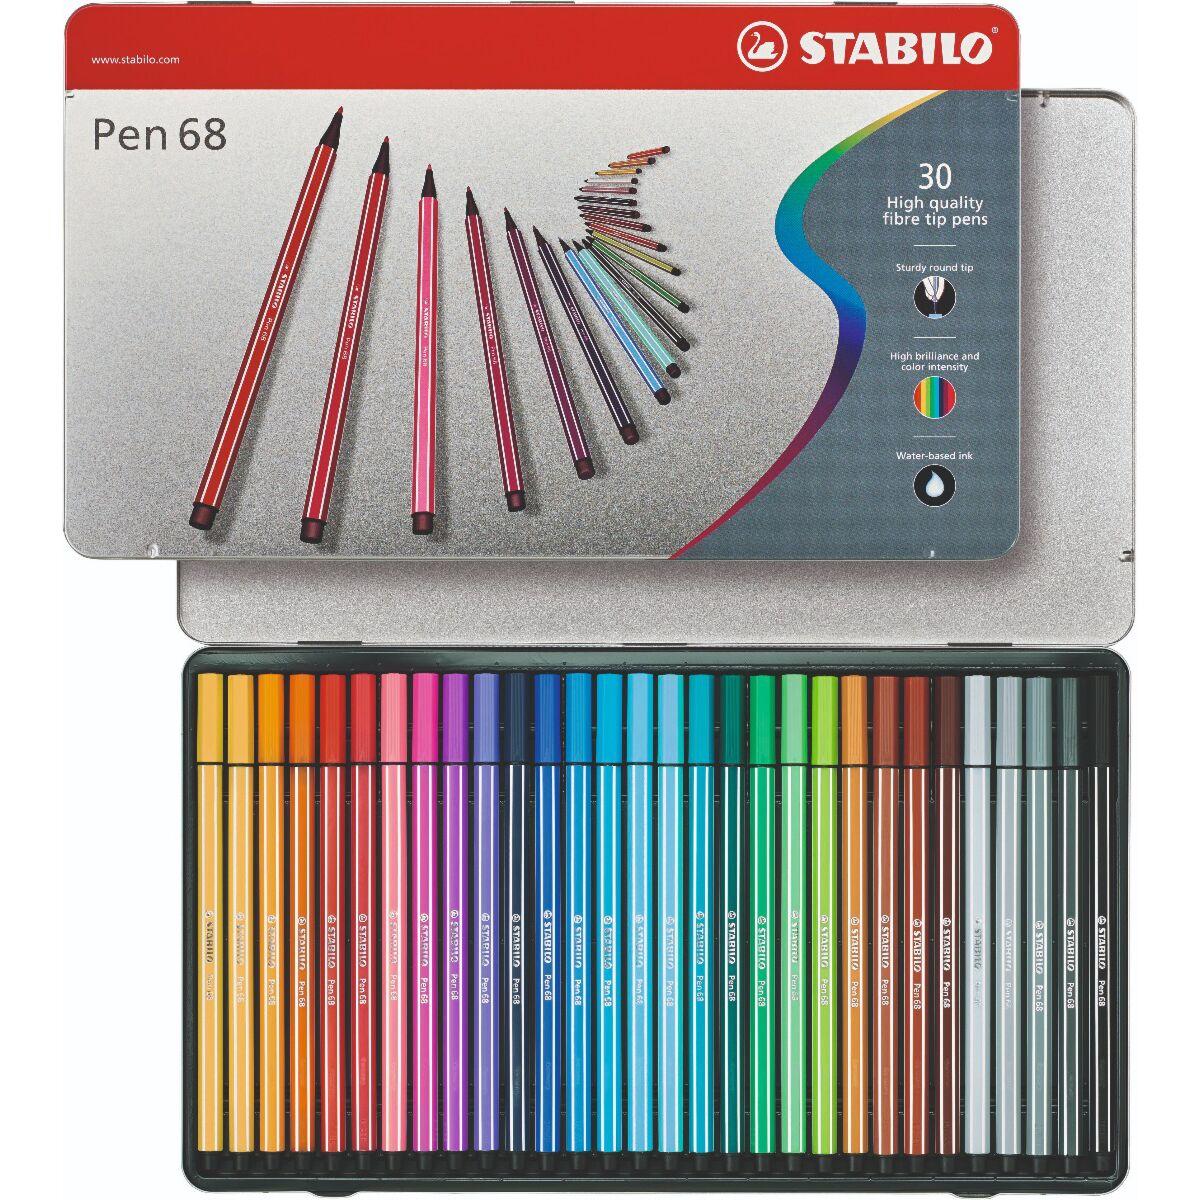 Фломастеры STABILO Pen 68, 30 цветов, в металлическом футляре, фото 1